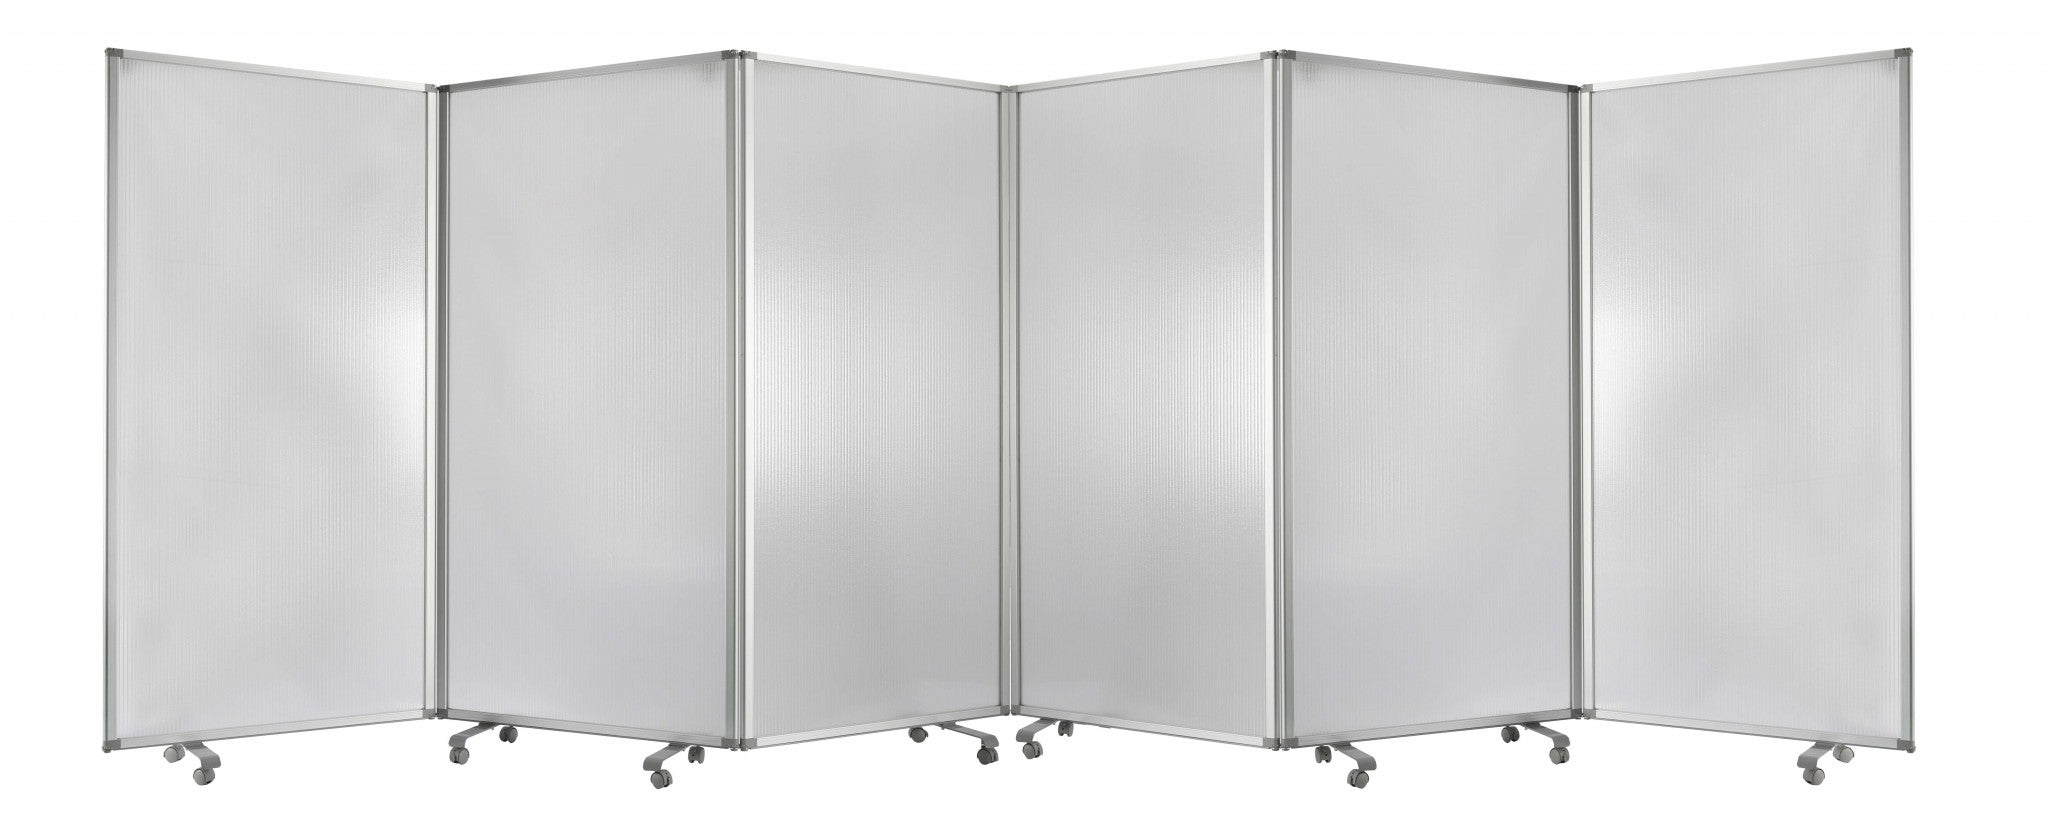 212 X 1 X 71 Metal Grey 6 Panel Screen